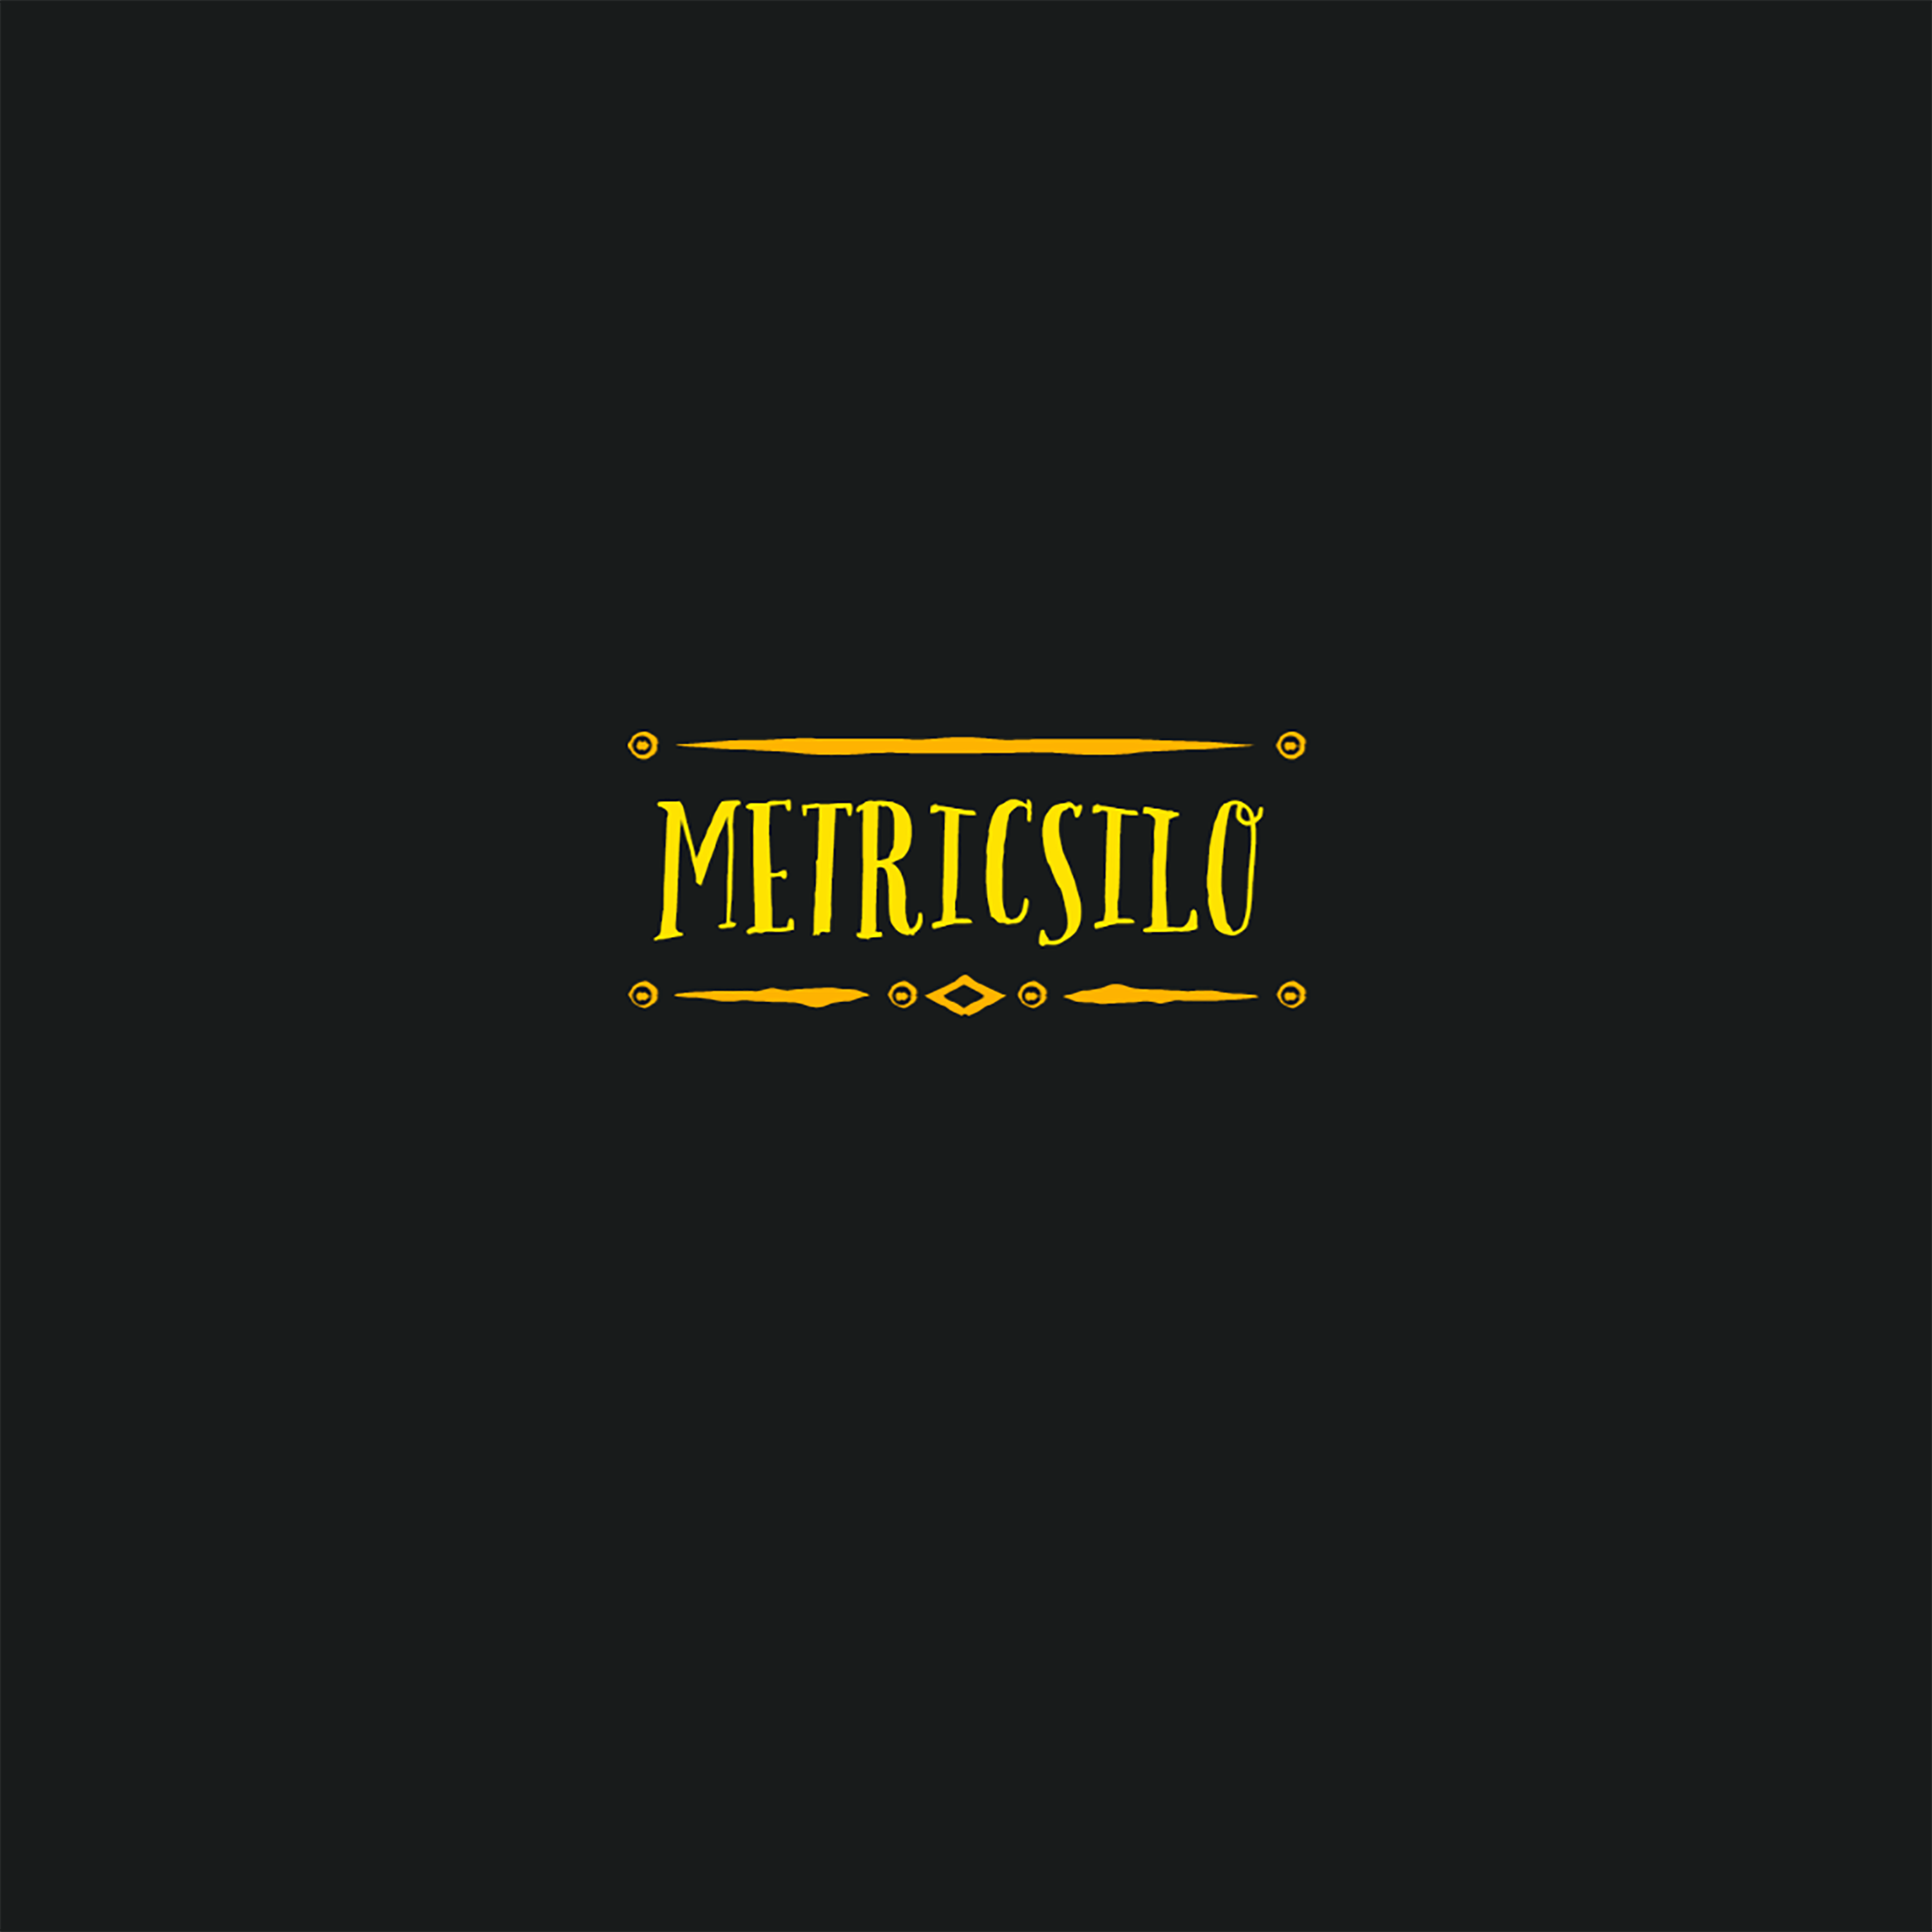 METRICSILO logo